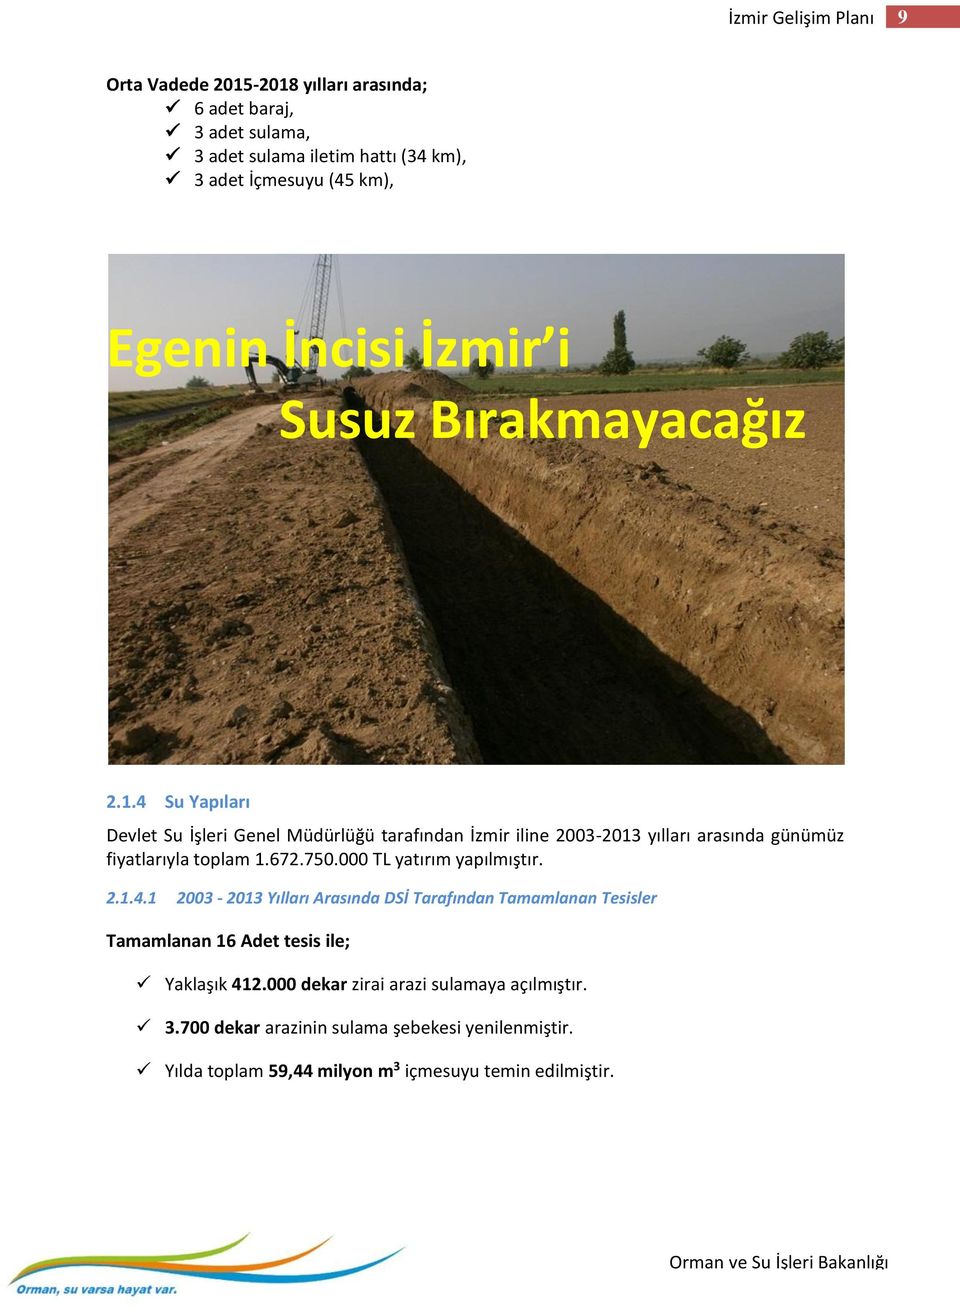 4 Su Yapıları Devlet Su İşleri Genel Müdürlüğü tarafından İzmir iline 2003-2013 yılları arasında günümüz fiyatlarıyla toplam 1.672.750.